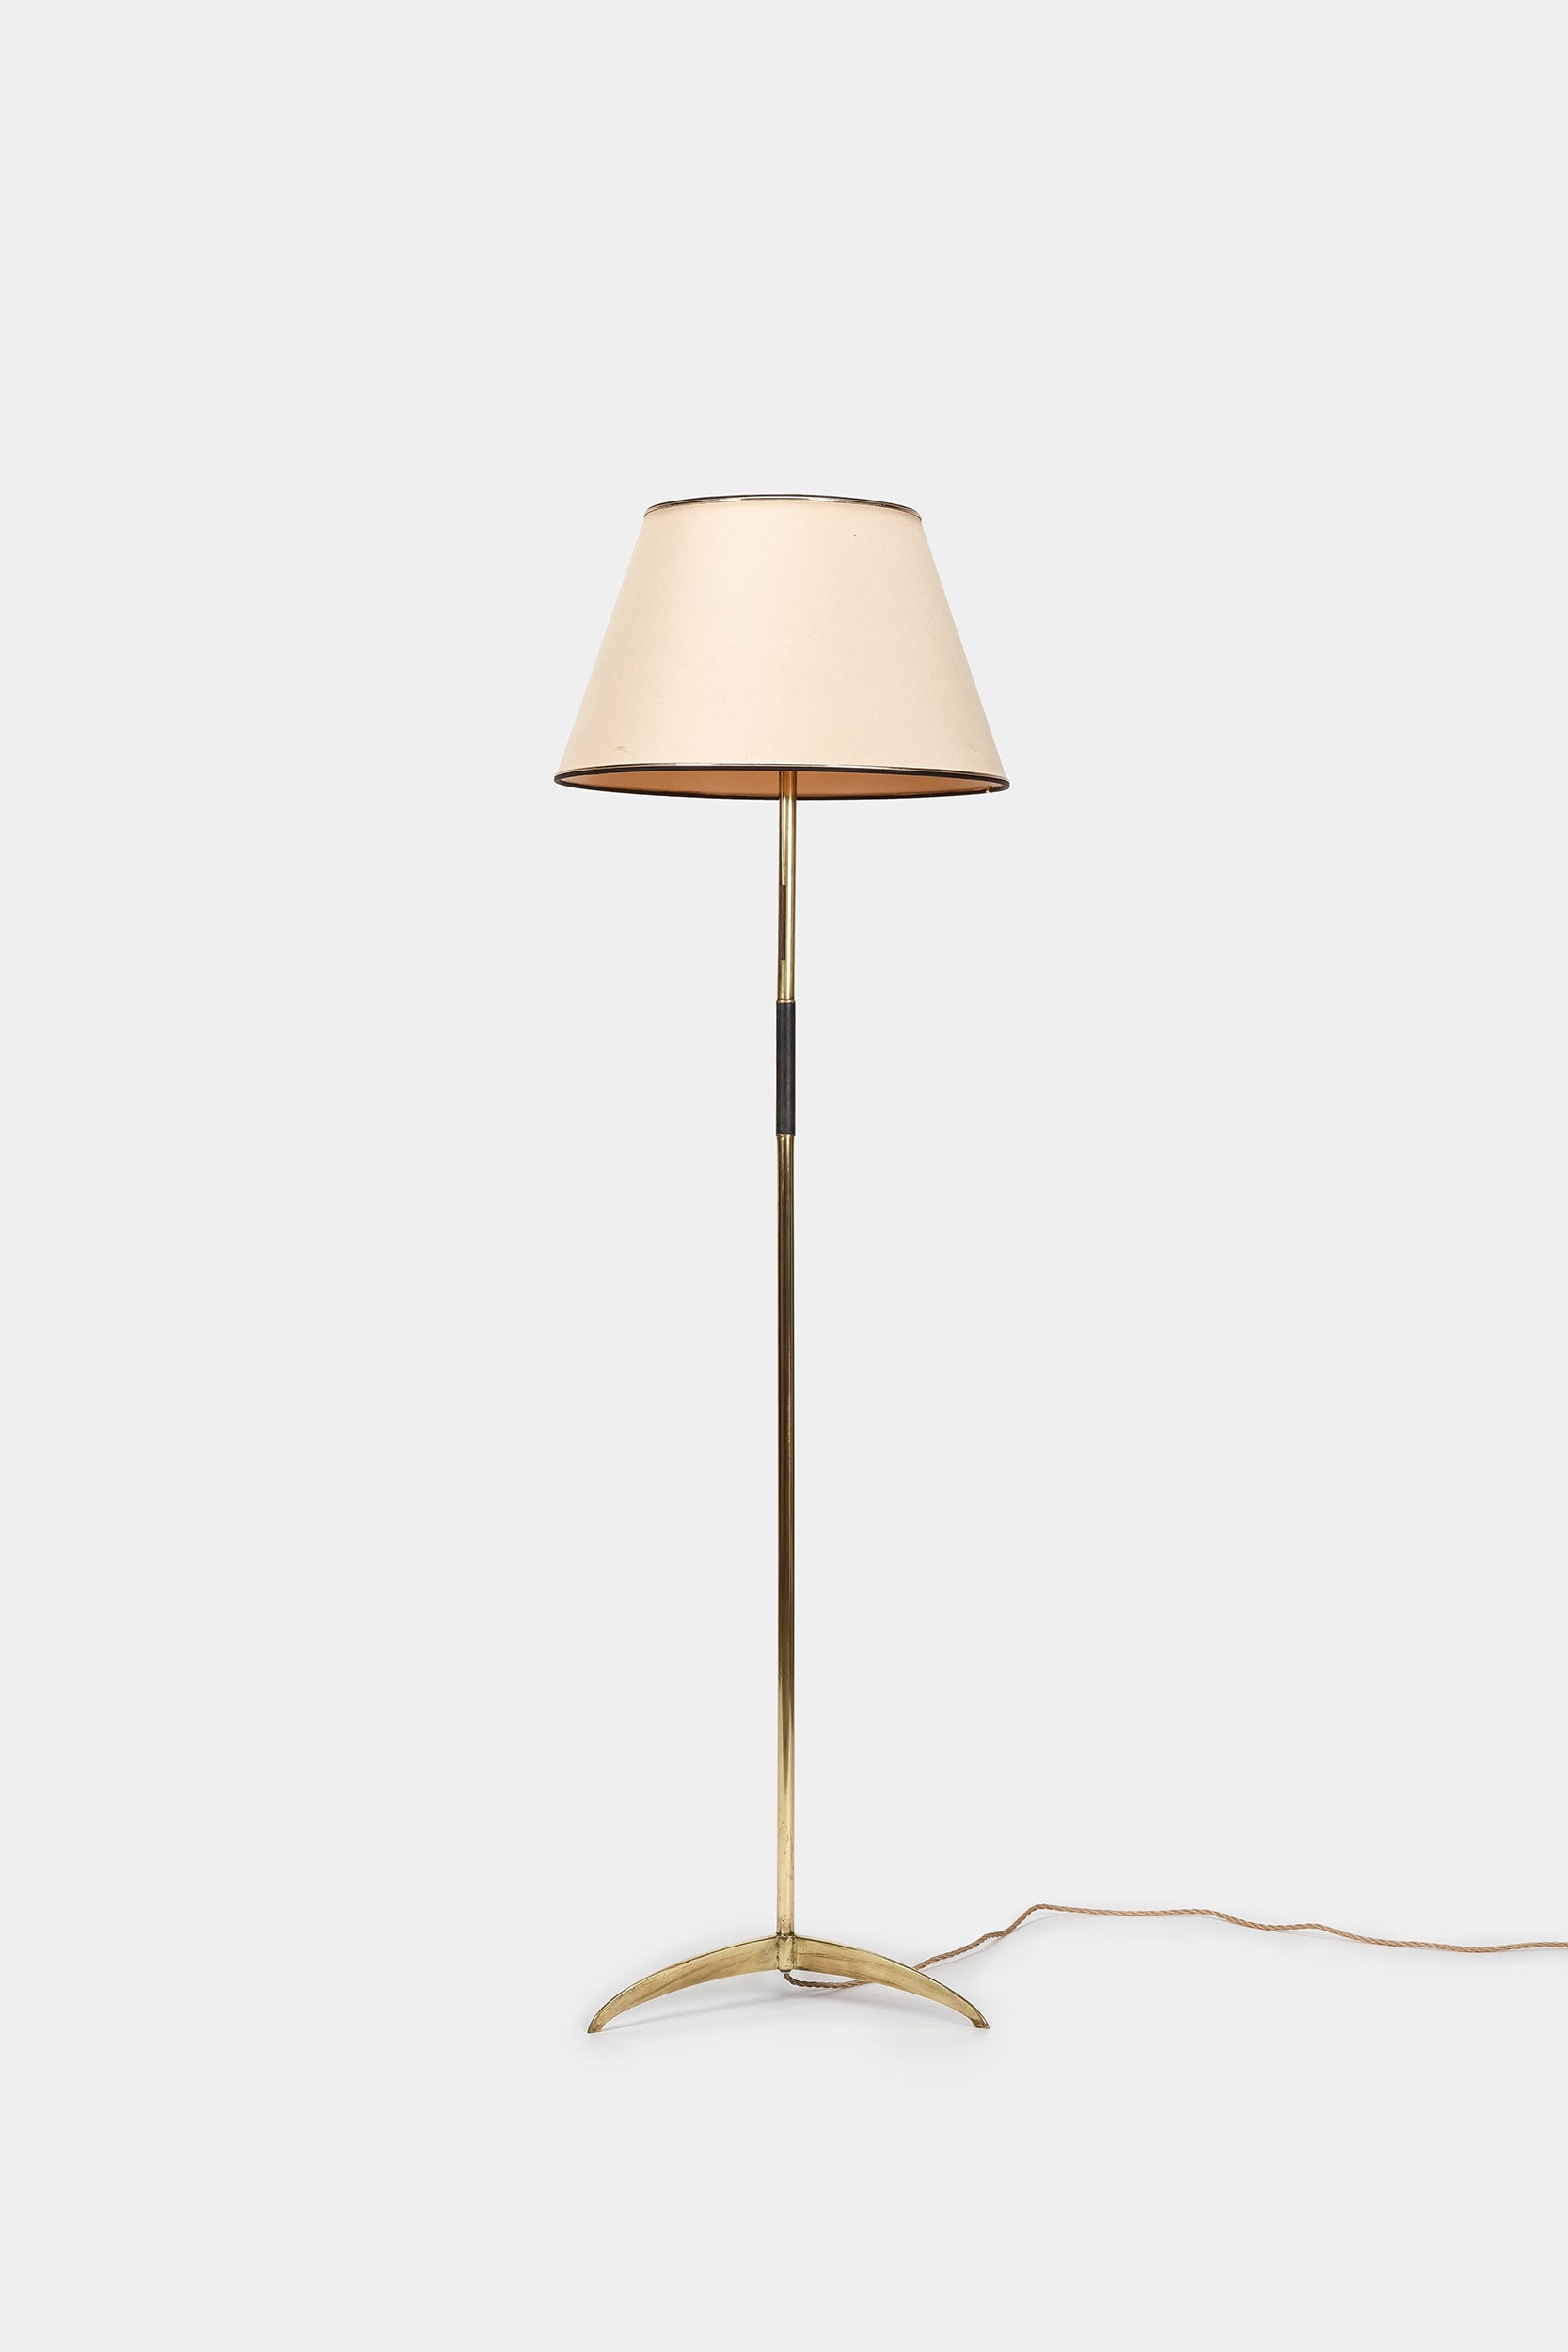 Floor Lamp, France, 60s